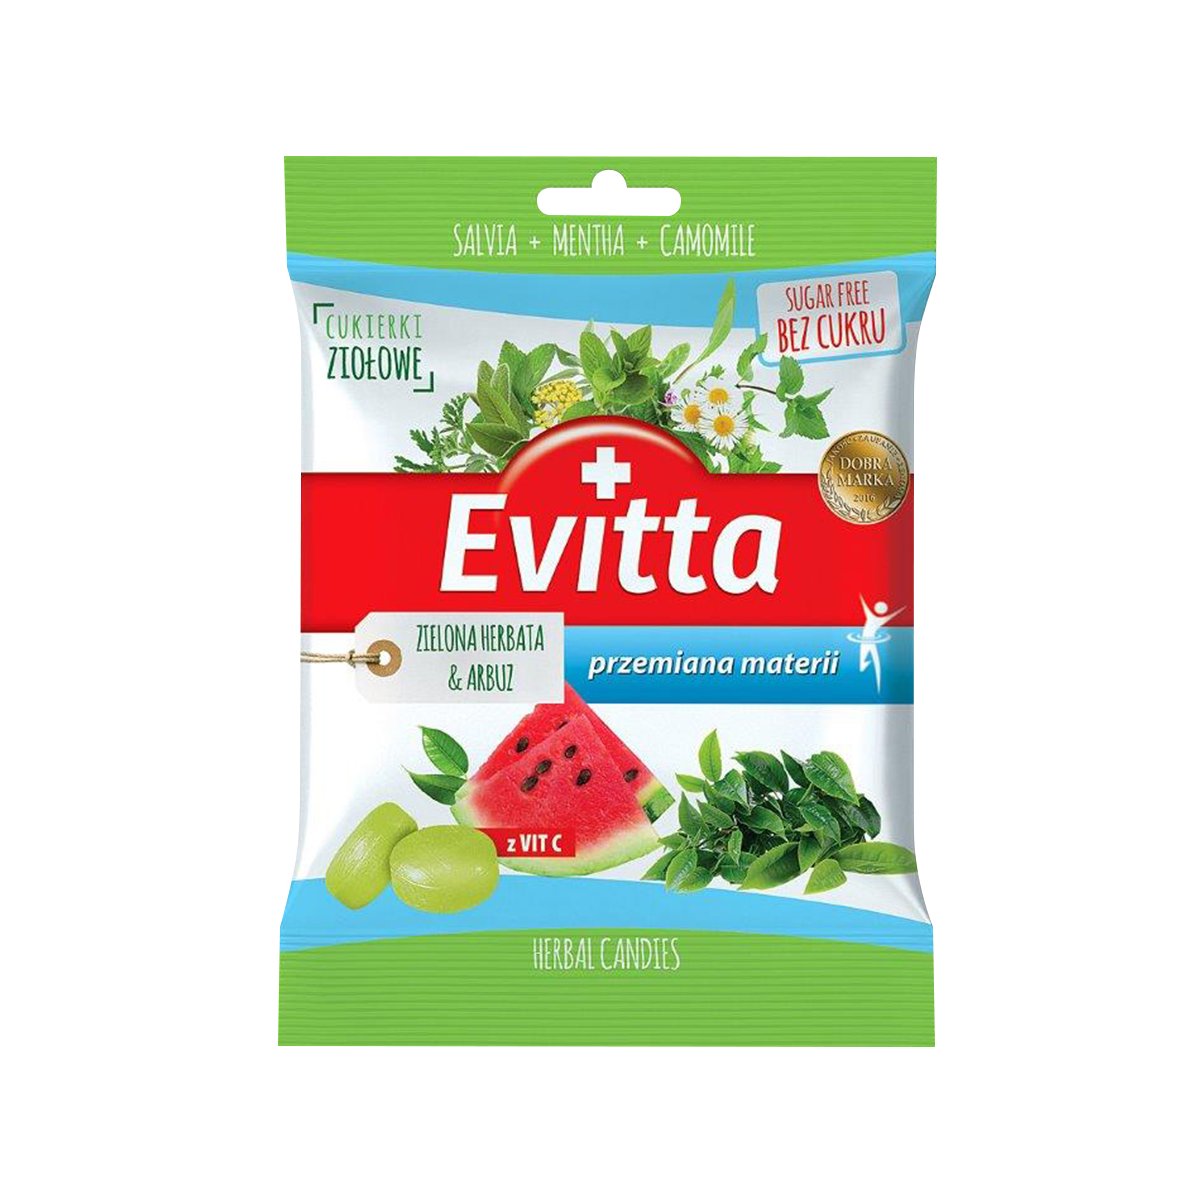 Cukierki na gardło ziołowe zielona herbata i arbuz z witaminą C bez cukru Evitta